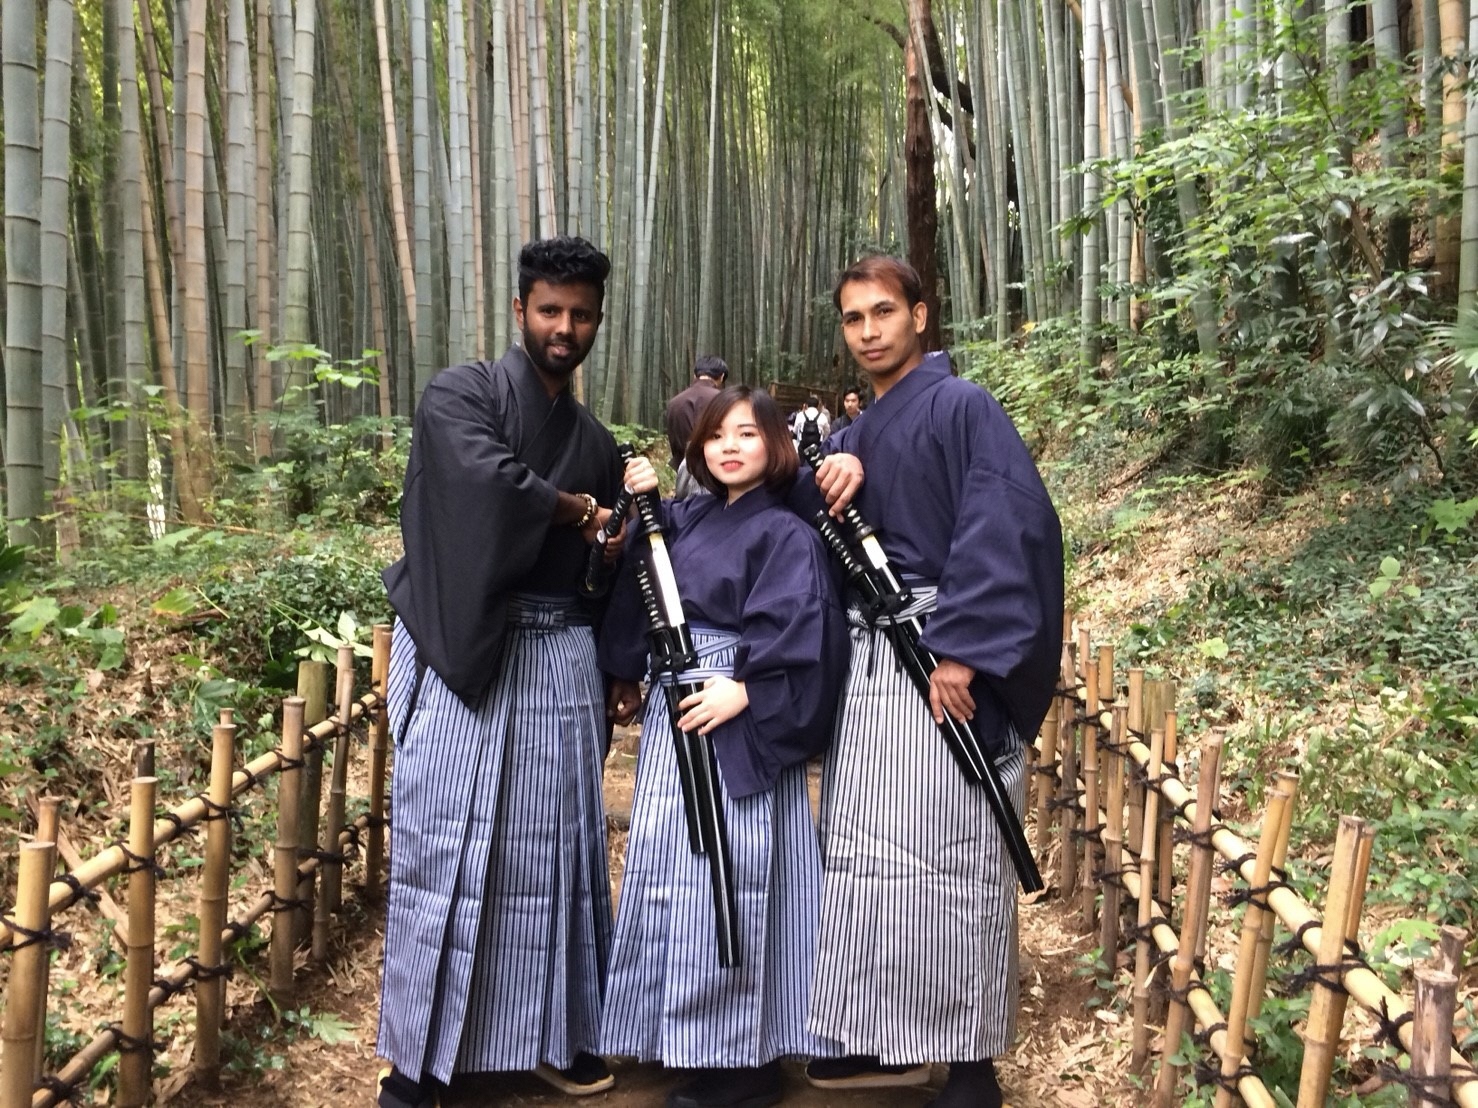 ひよどり坂で、袴を着た女性と外国の男性が腰に刀を差しポーズをとっている写真